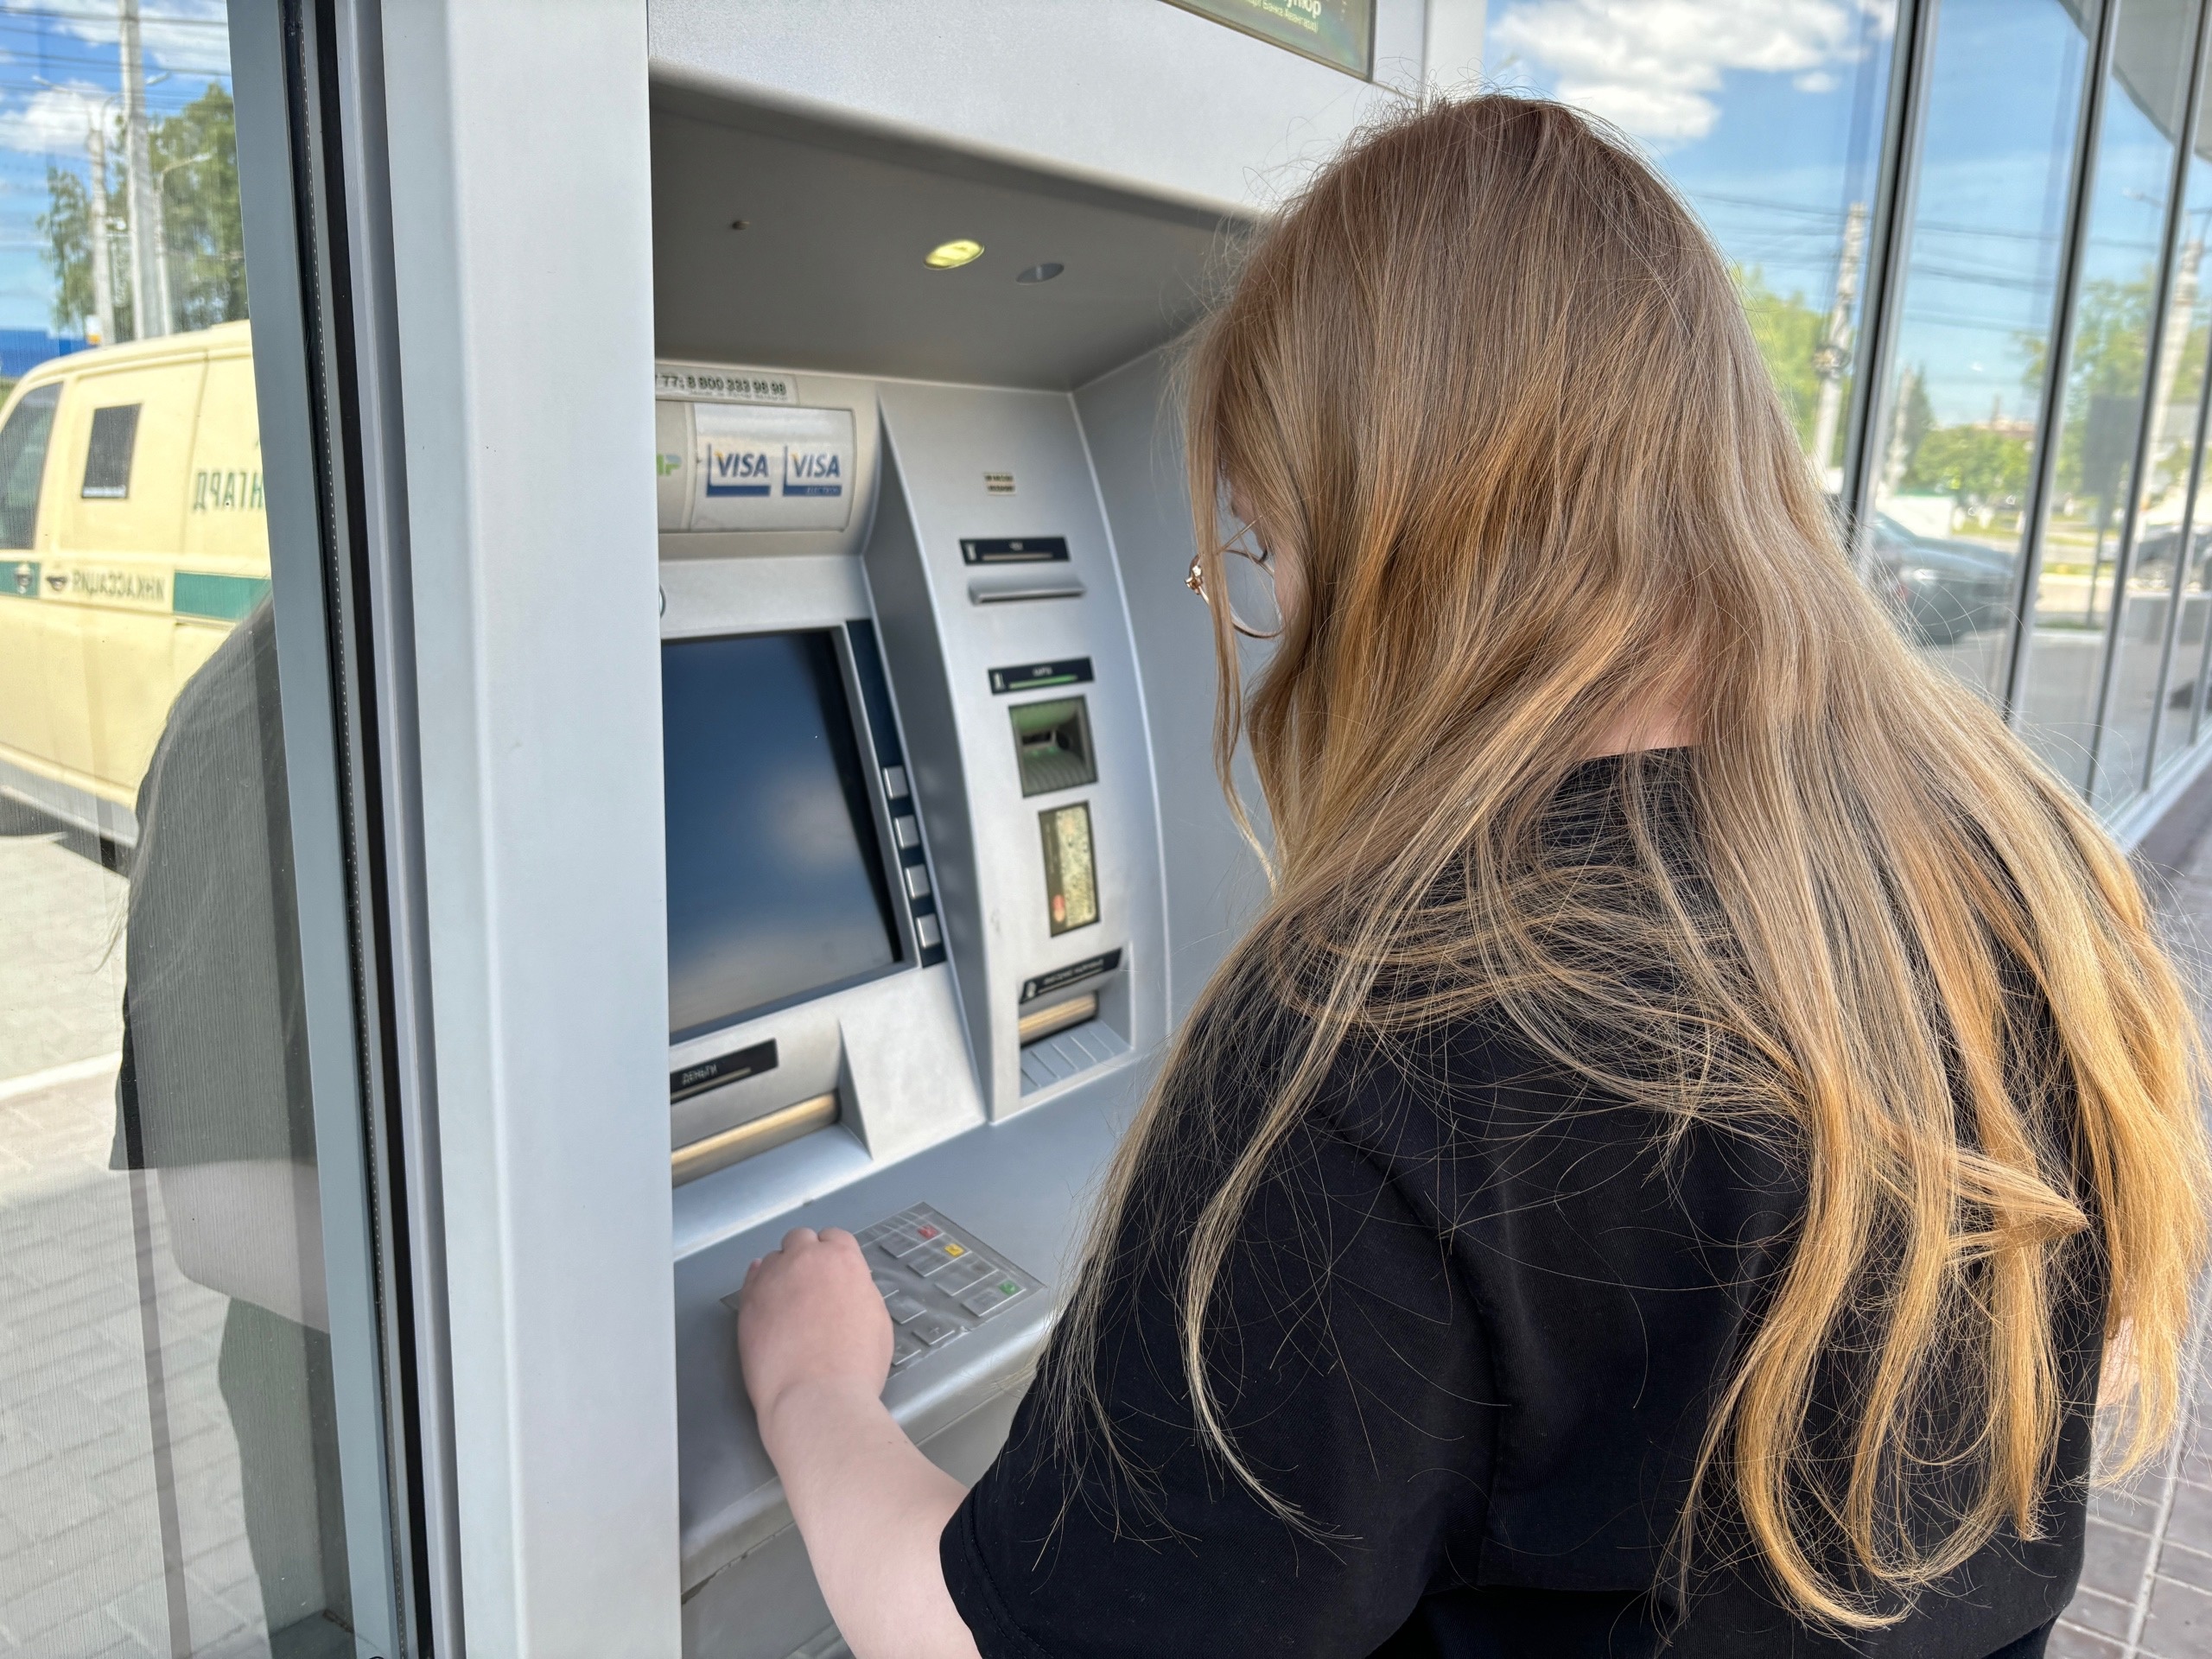 В Чебоксарах женщина закрыла своим телом банкомат, чтобы спасти чужие деньги